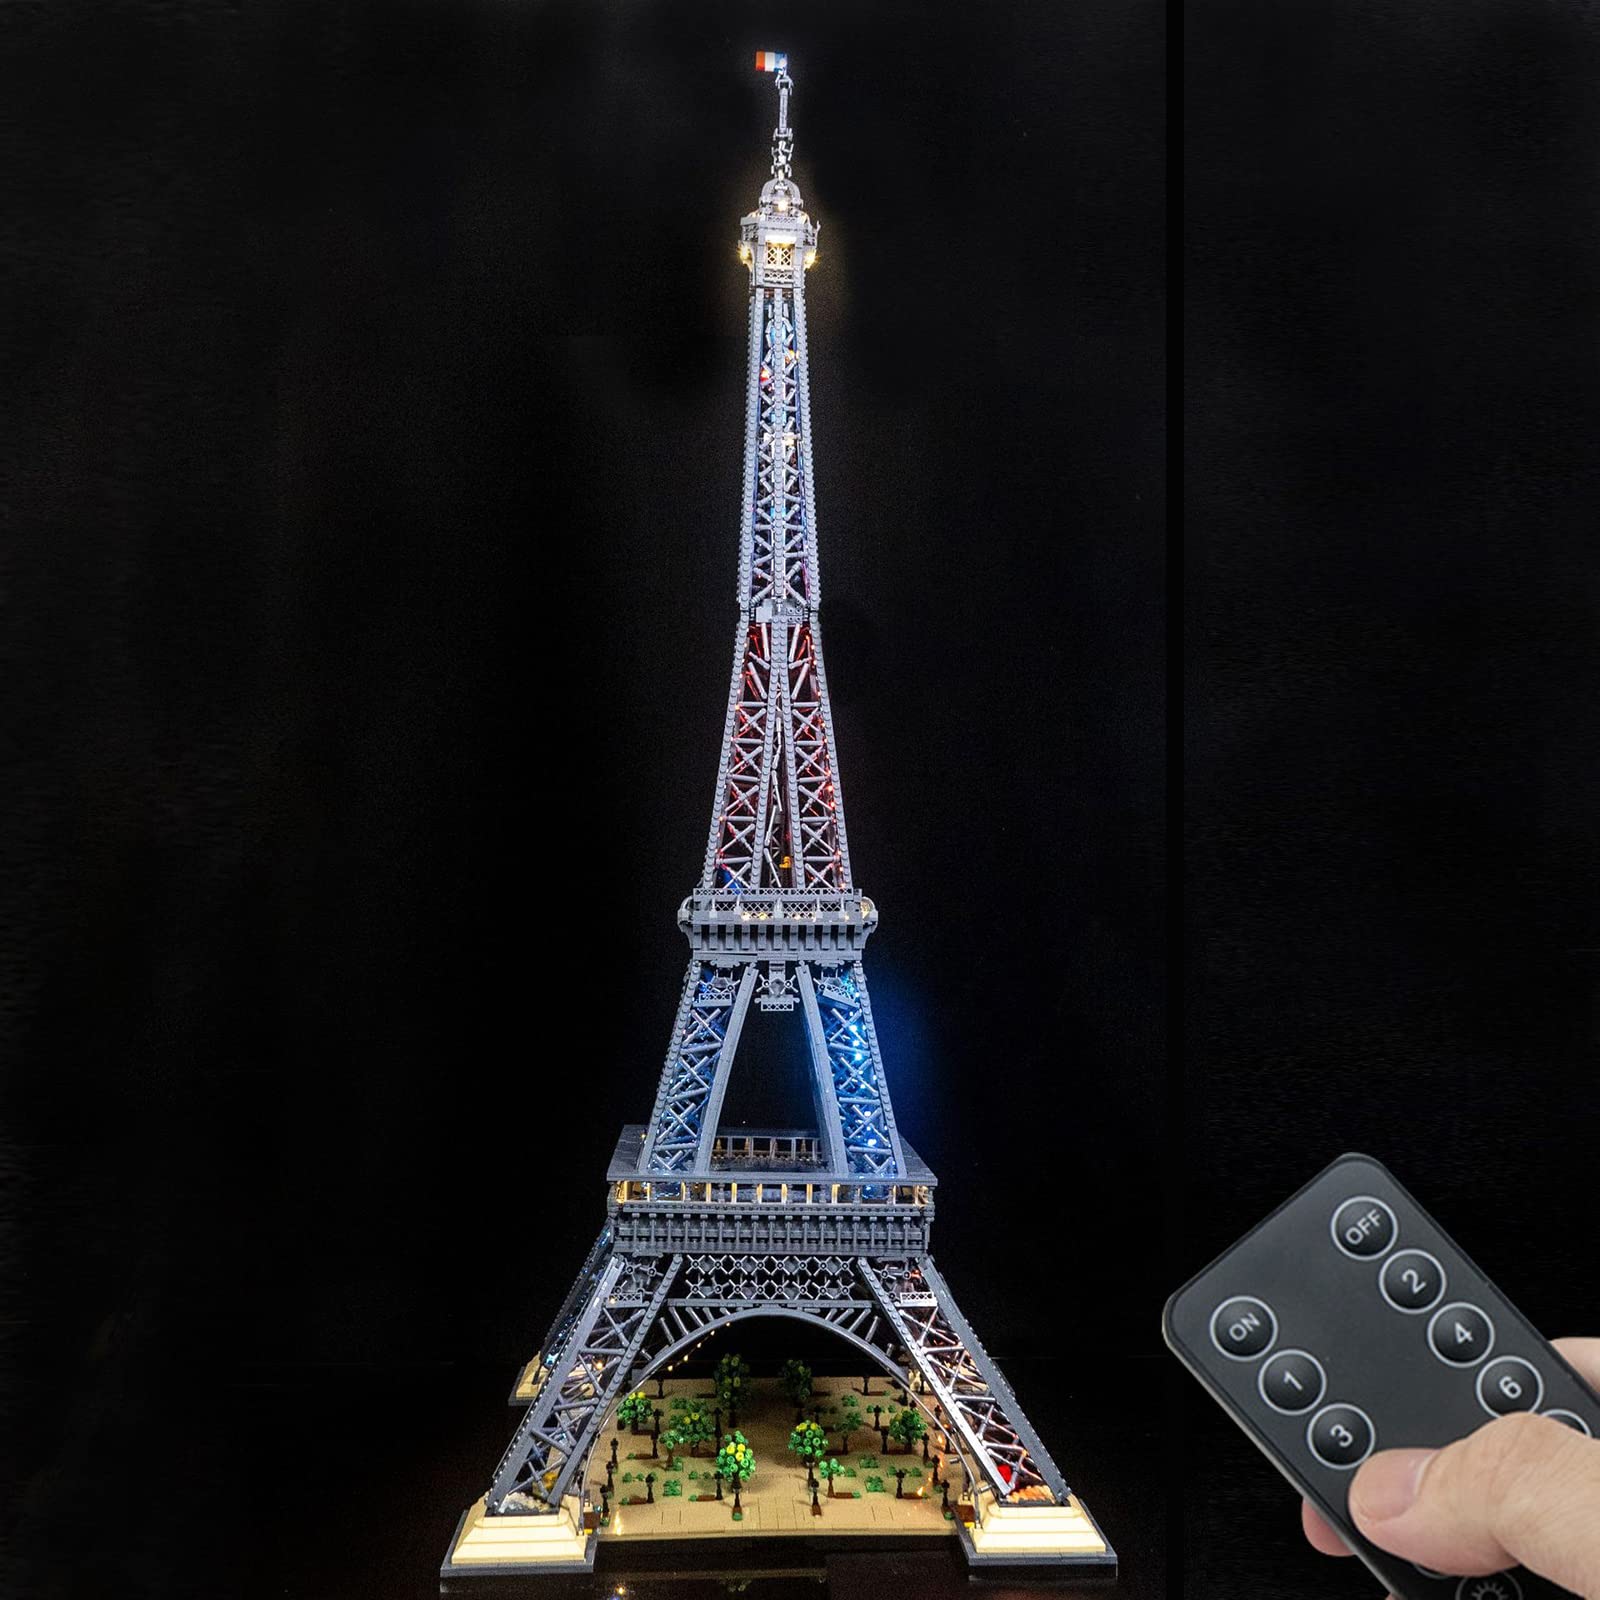 LED-Beleuchtung Set für Lego Eiffelturm 10307 Modell, Licht Set kompatibel mit Lego 10307 Eiffelturm Baustein Modell (Modell Nicht enthalten)